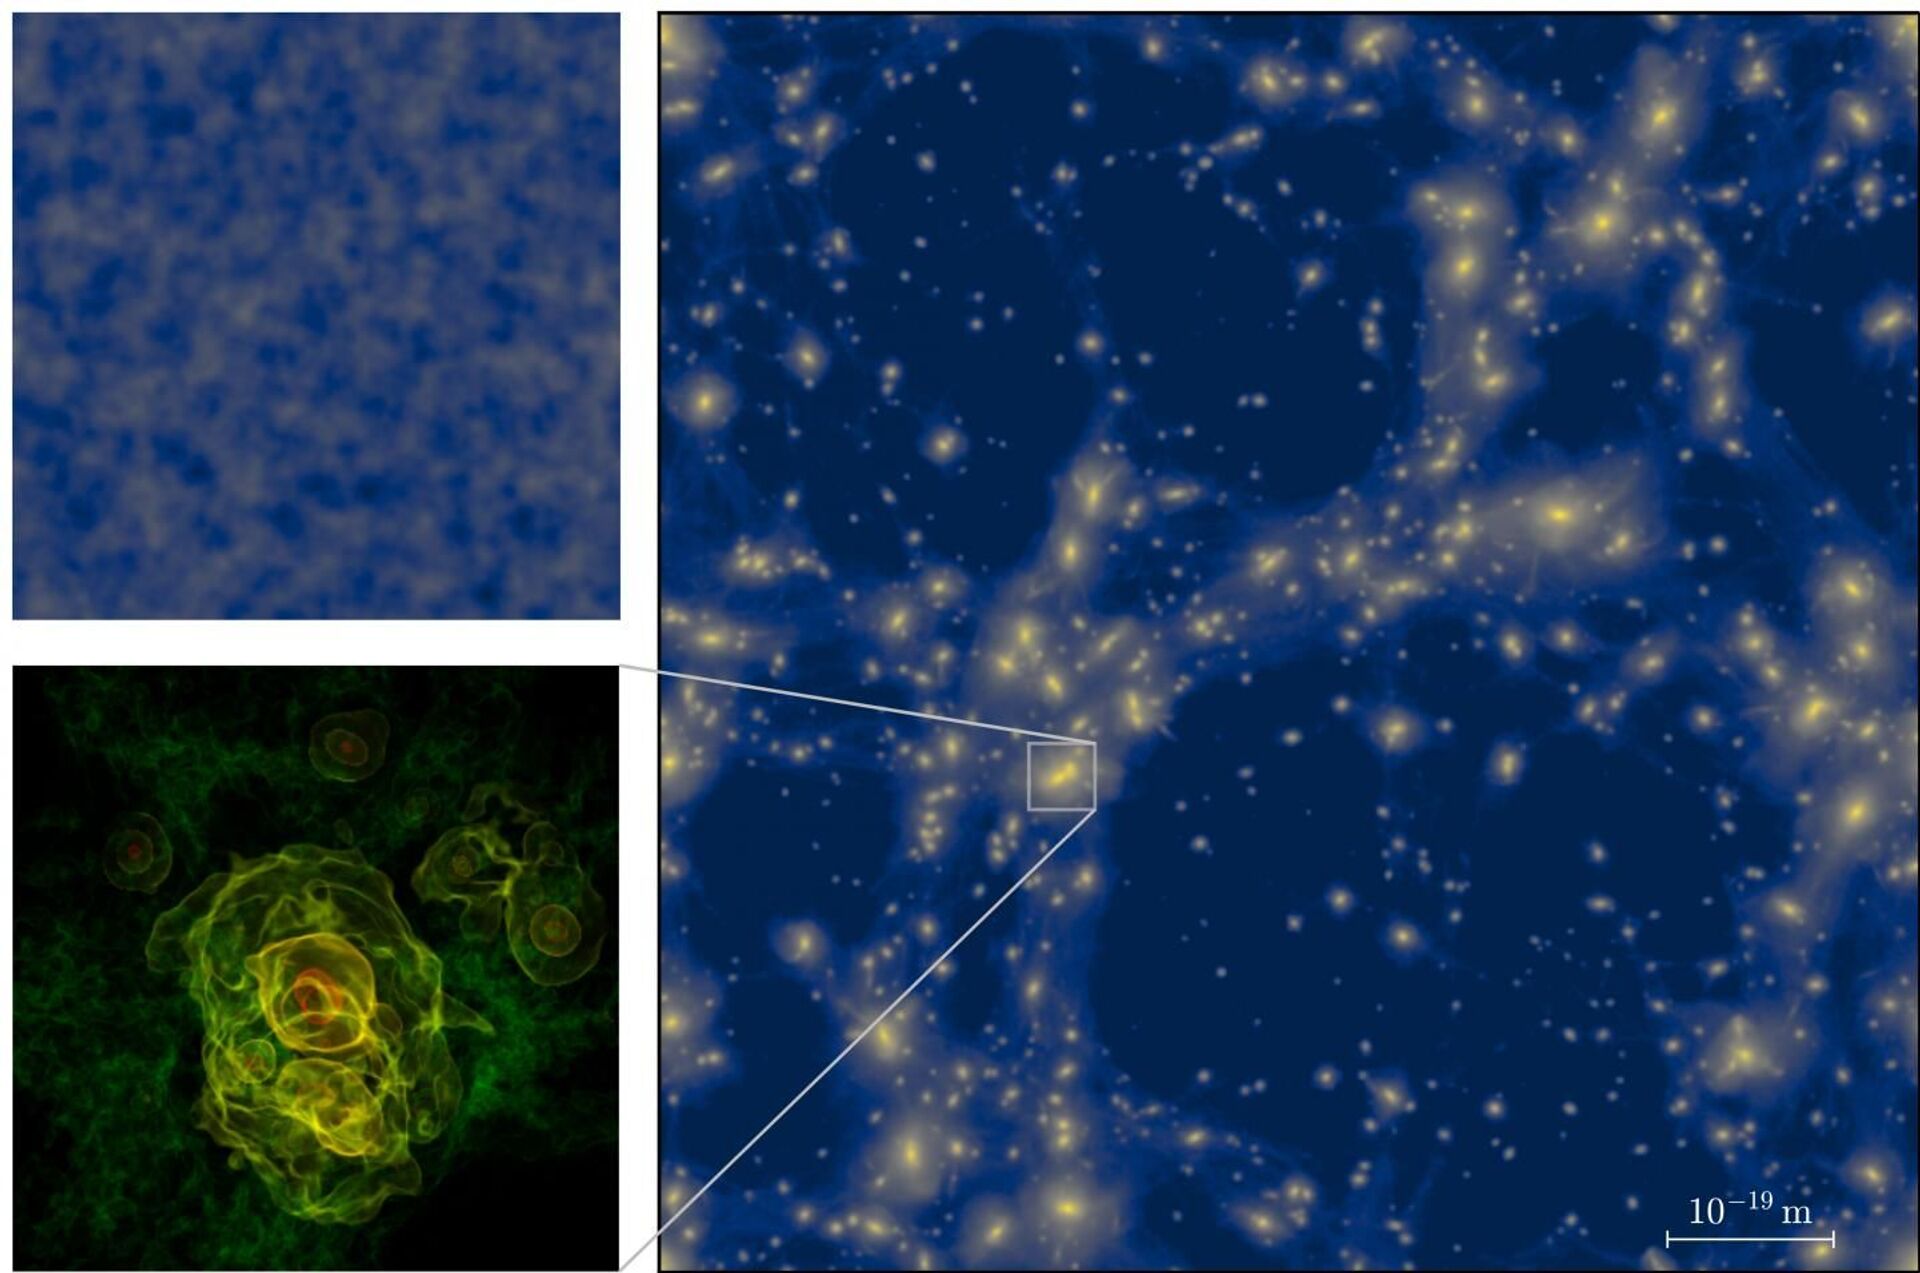 Primeiras estruturas do Universo após Big Bang eram microscópicas, sugere estudo (FOTO) - Sputnik Brasil, 1920, 26.03.2021